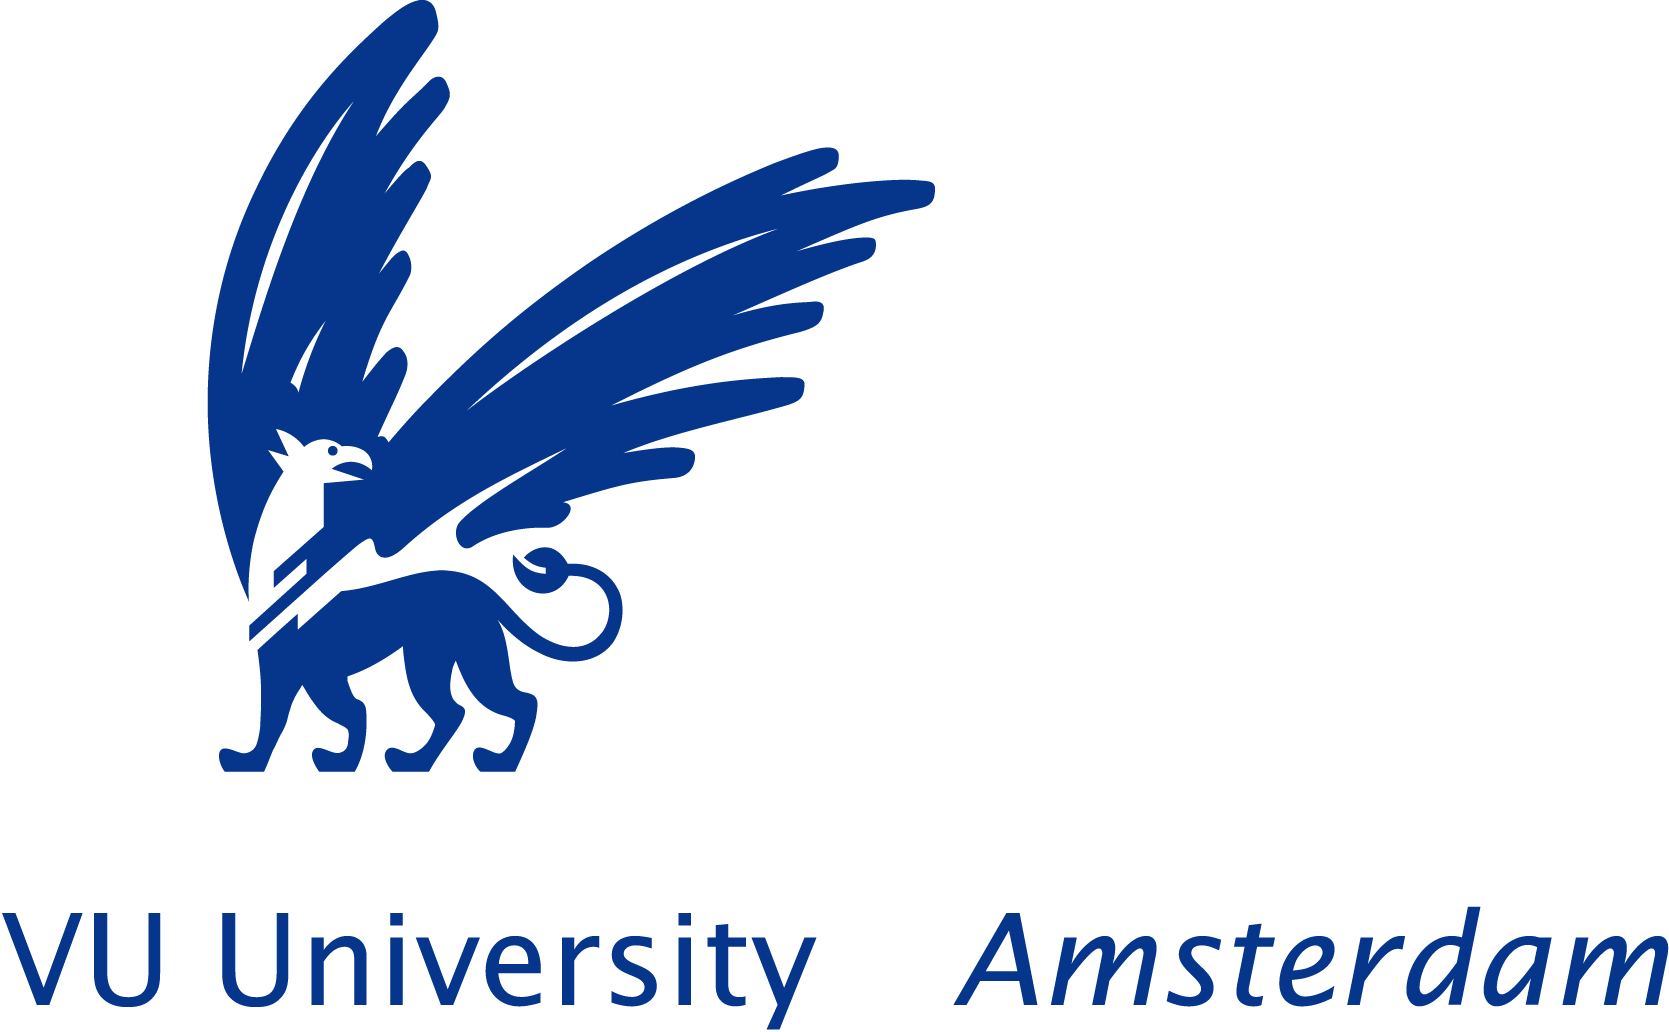 vrije universiteit amsterdam logo 02